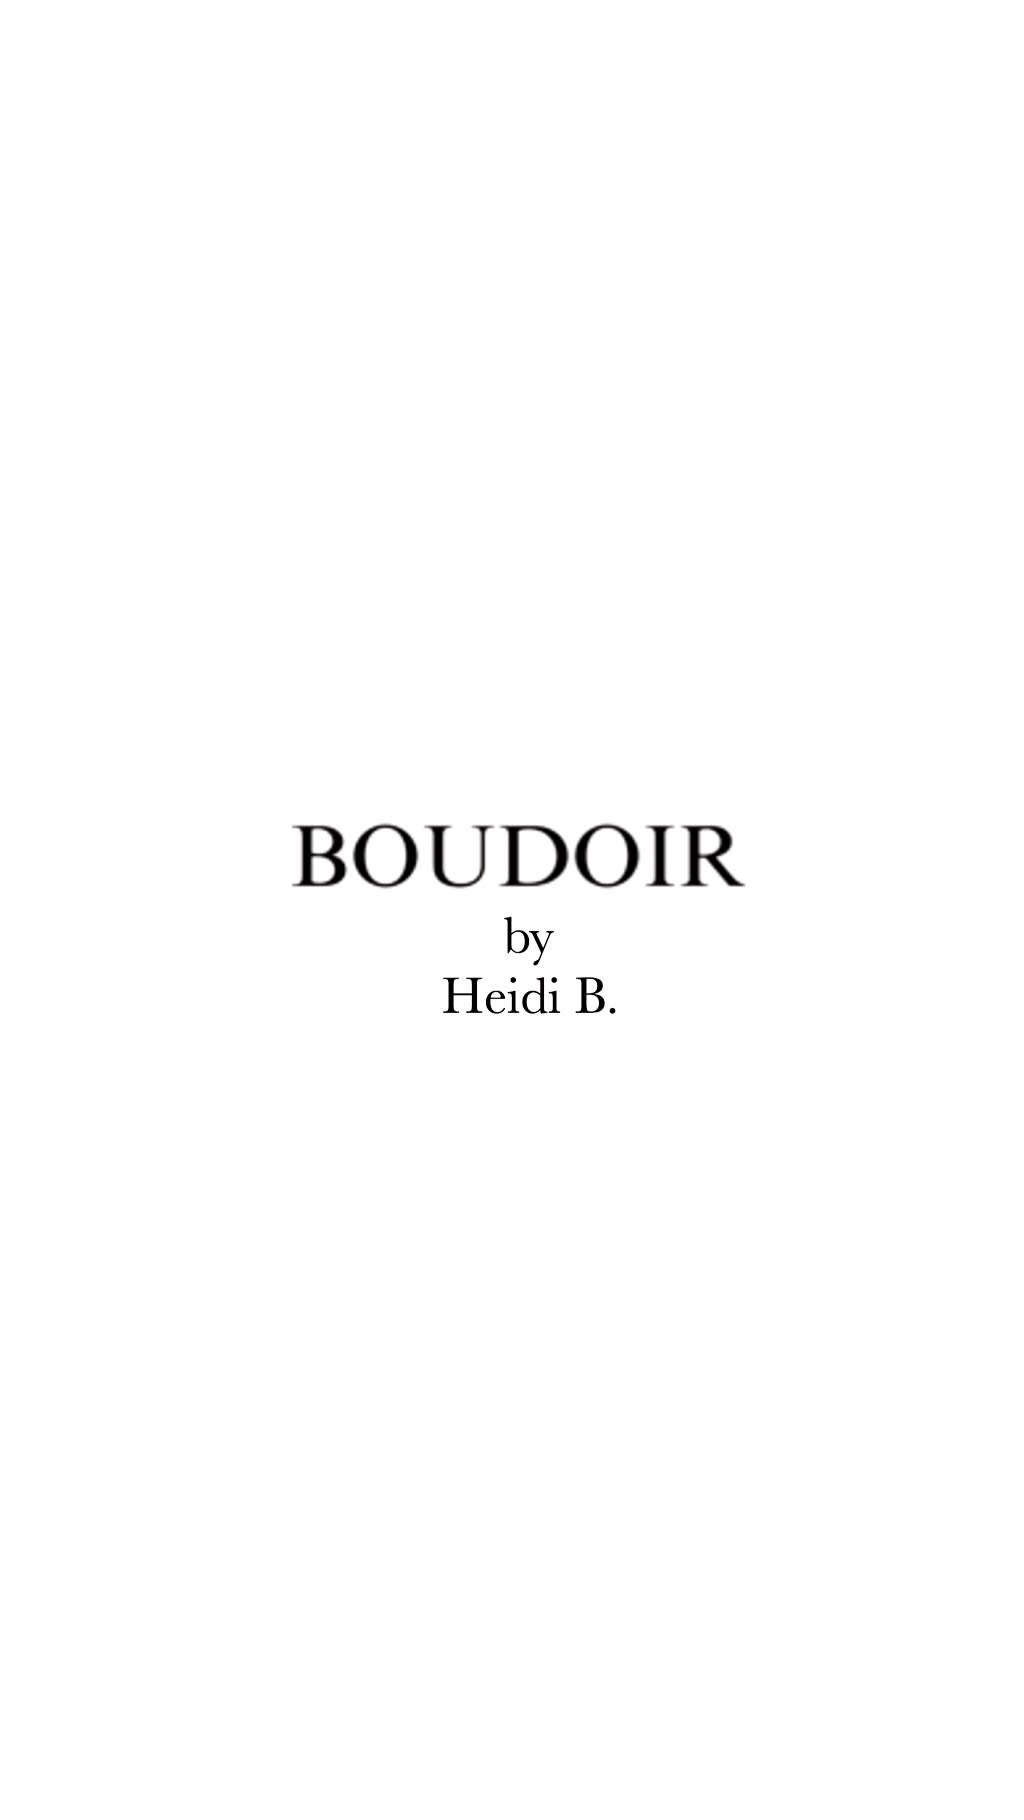 Boudoir by Heidi B.